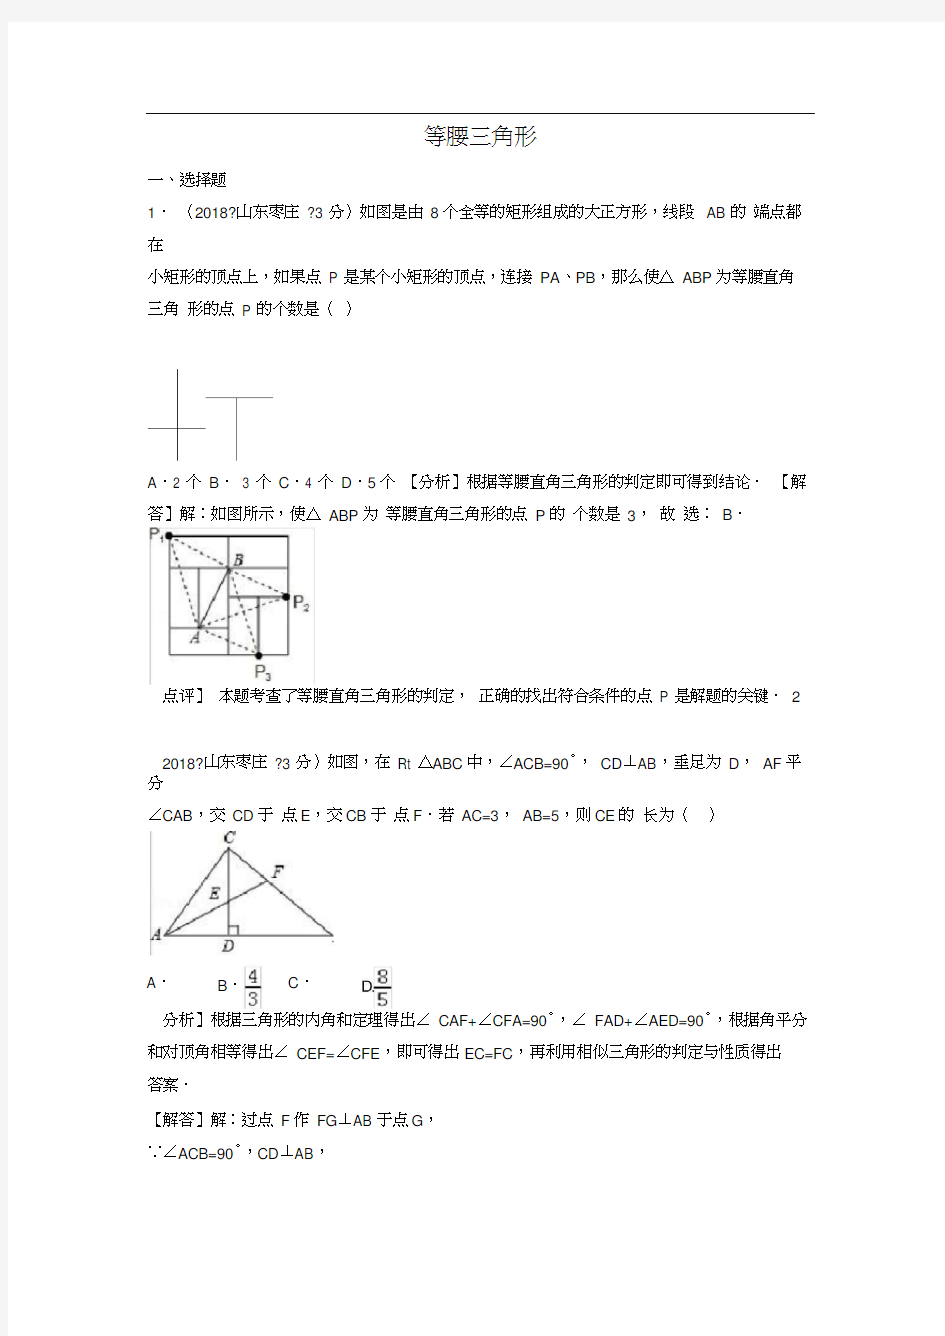 (完整版)2019中考数学等腰三角形